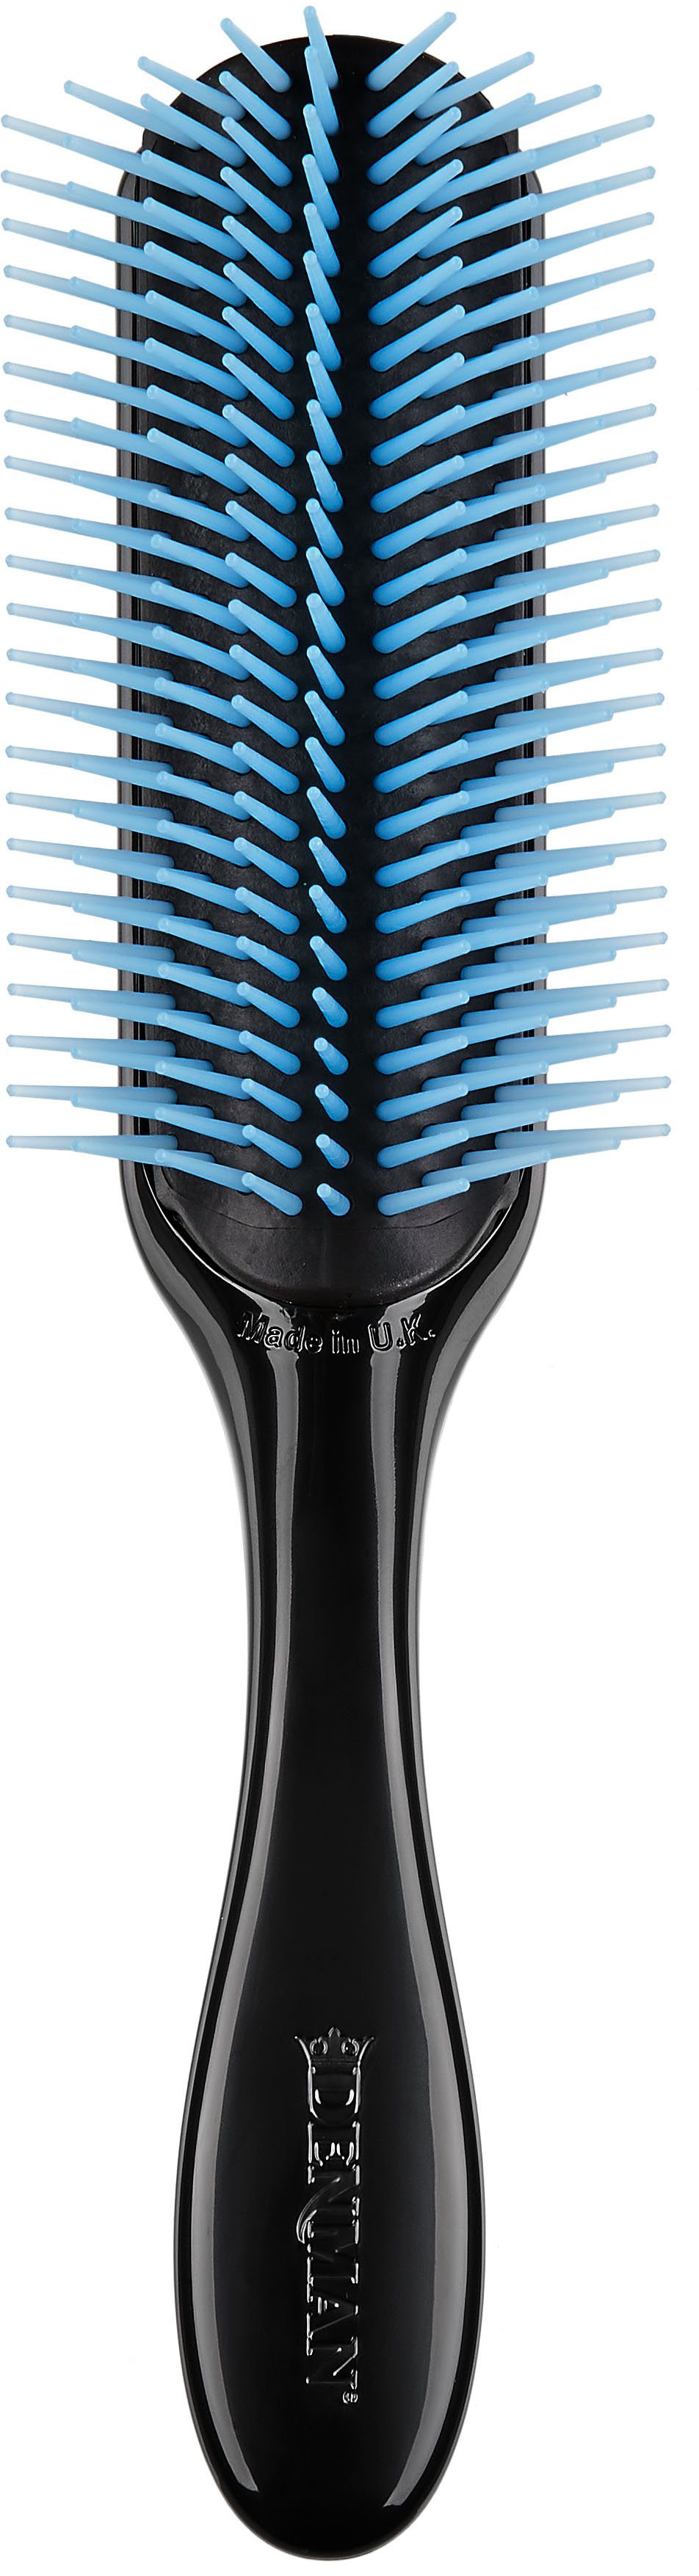 DENMAN Stylingbürste D4, 9-reihig, Stylingbürste mit abnehmbarem Kissen schwarz-blau | Haarbürsten